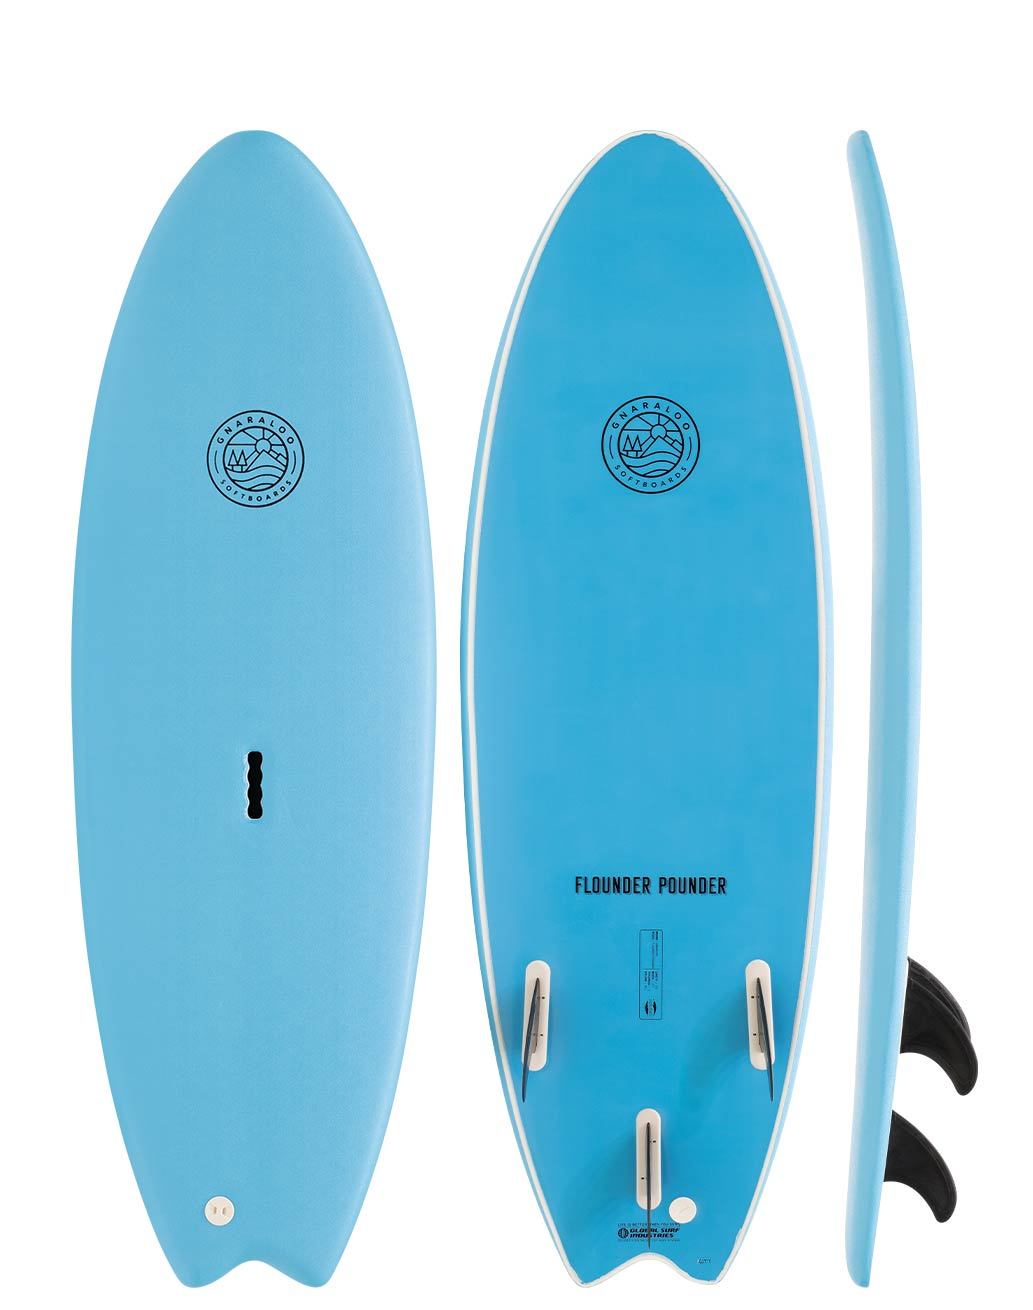 Gnaraloo Soft Surfboards - Flounder Pounder blue soft surfboard